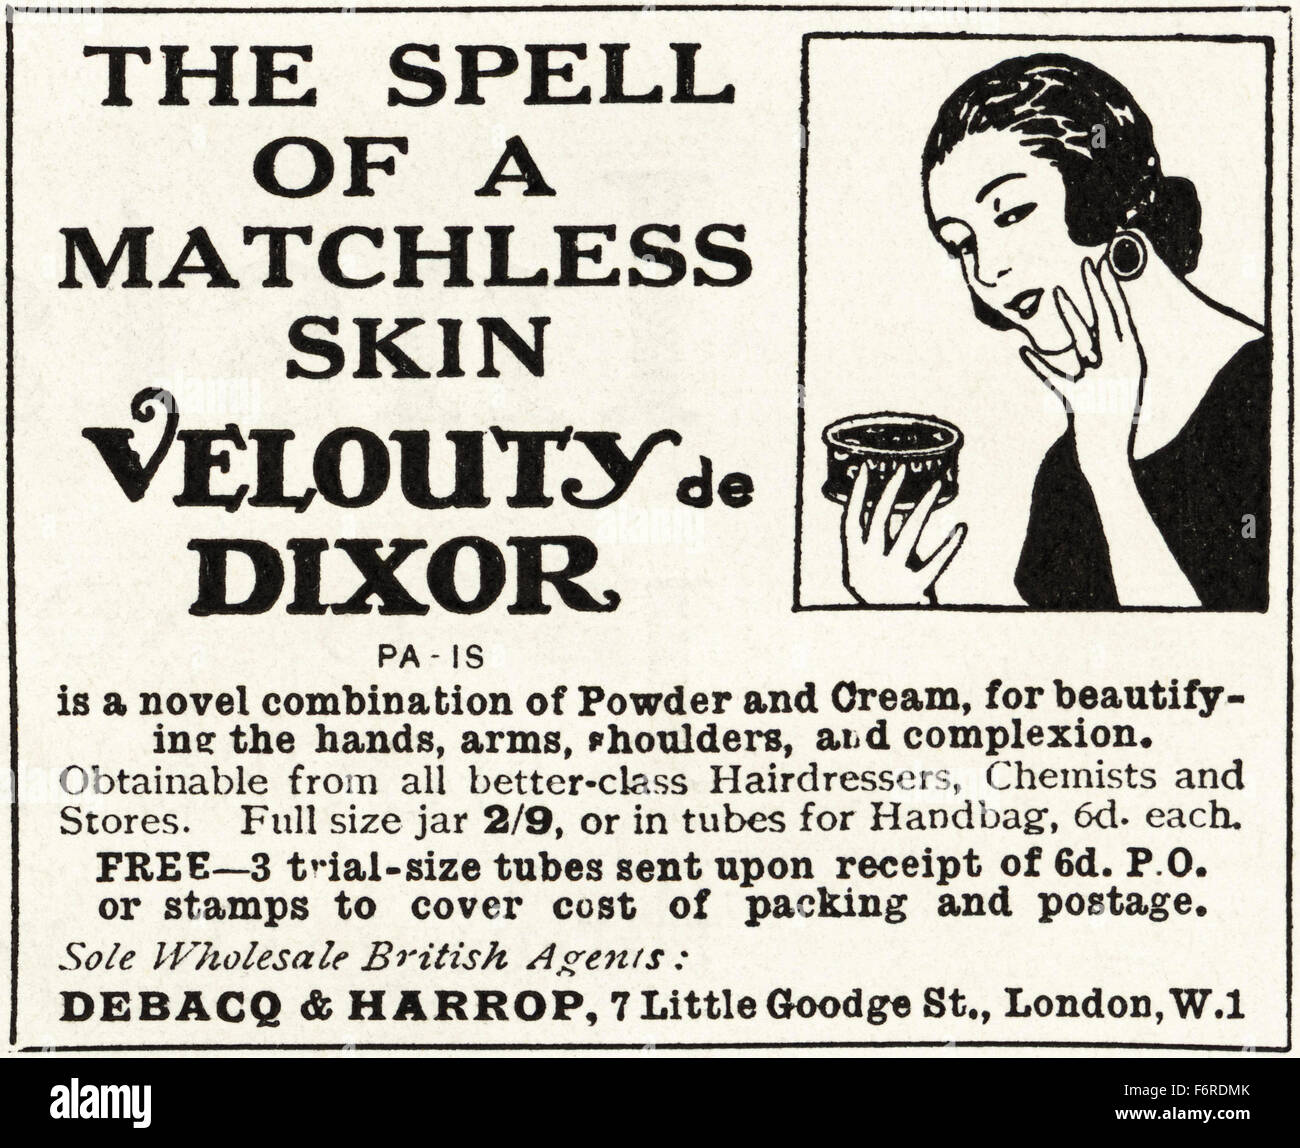 1920s annuncio. Annuncio datato 1923 pubblicità Velouty de Dixor crema per la pelle. Foto Stock